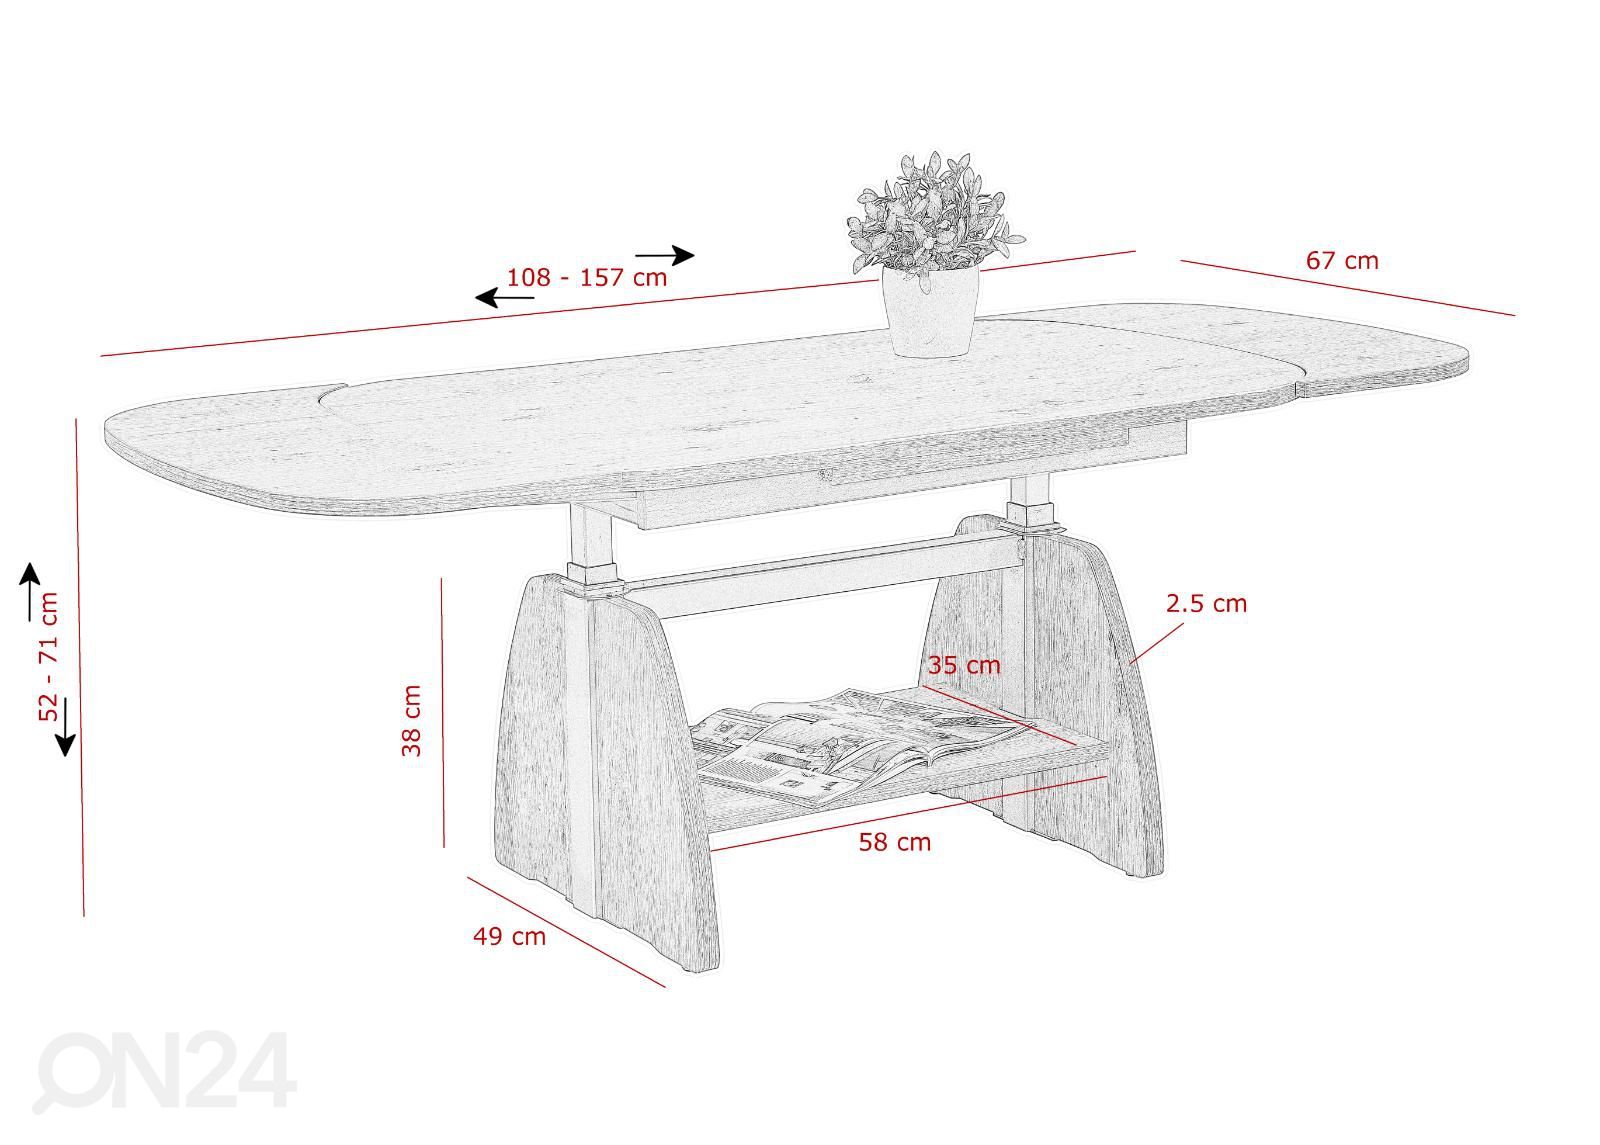 Säädettävä sohvapöytä Colin 67x108-157 cm kuvasuurennos mitat